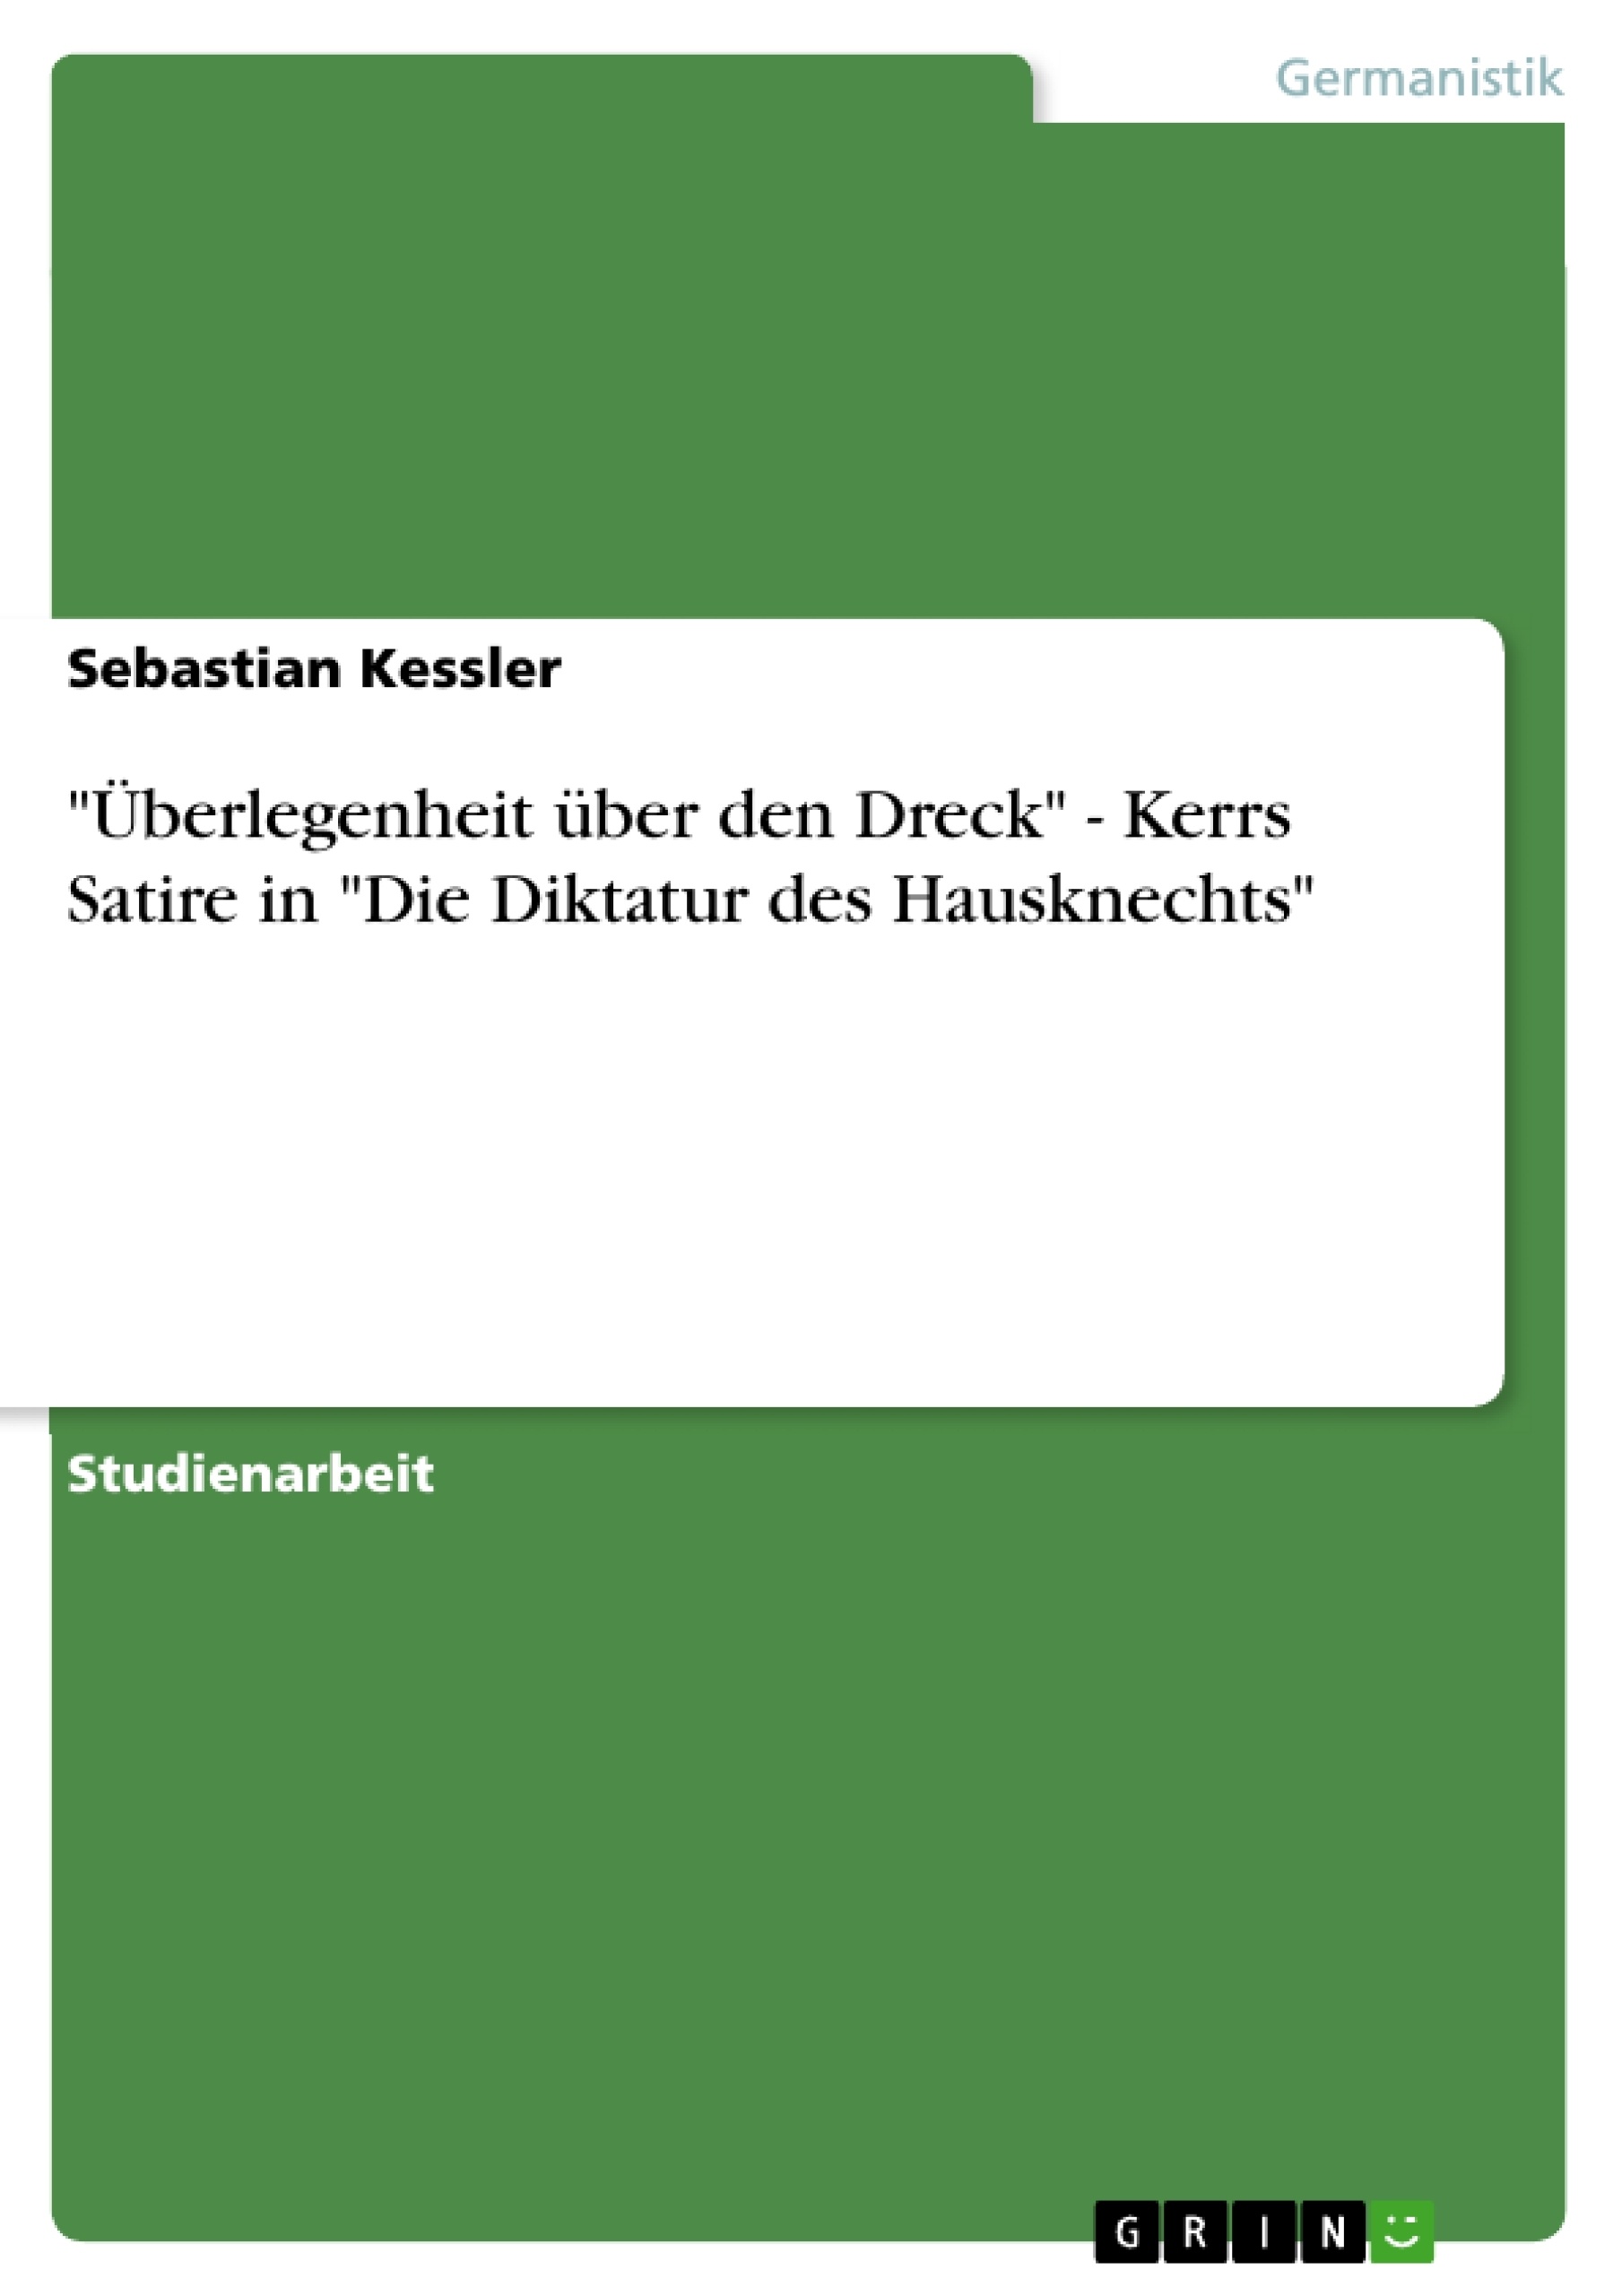 Titre: "Überlegenheit über den Dreck" - Kerrs Satire in "Die Diktatur des Hausknechts"